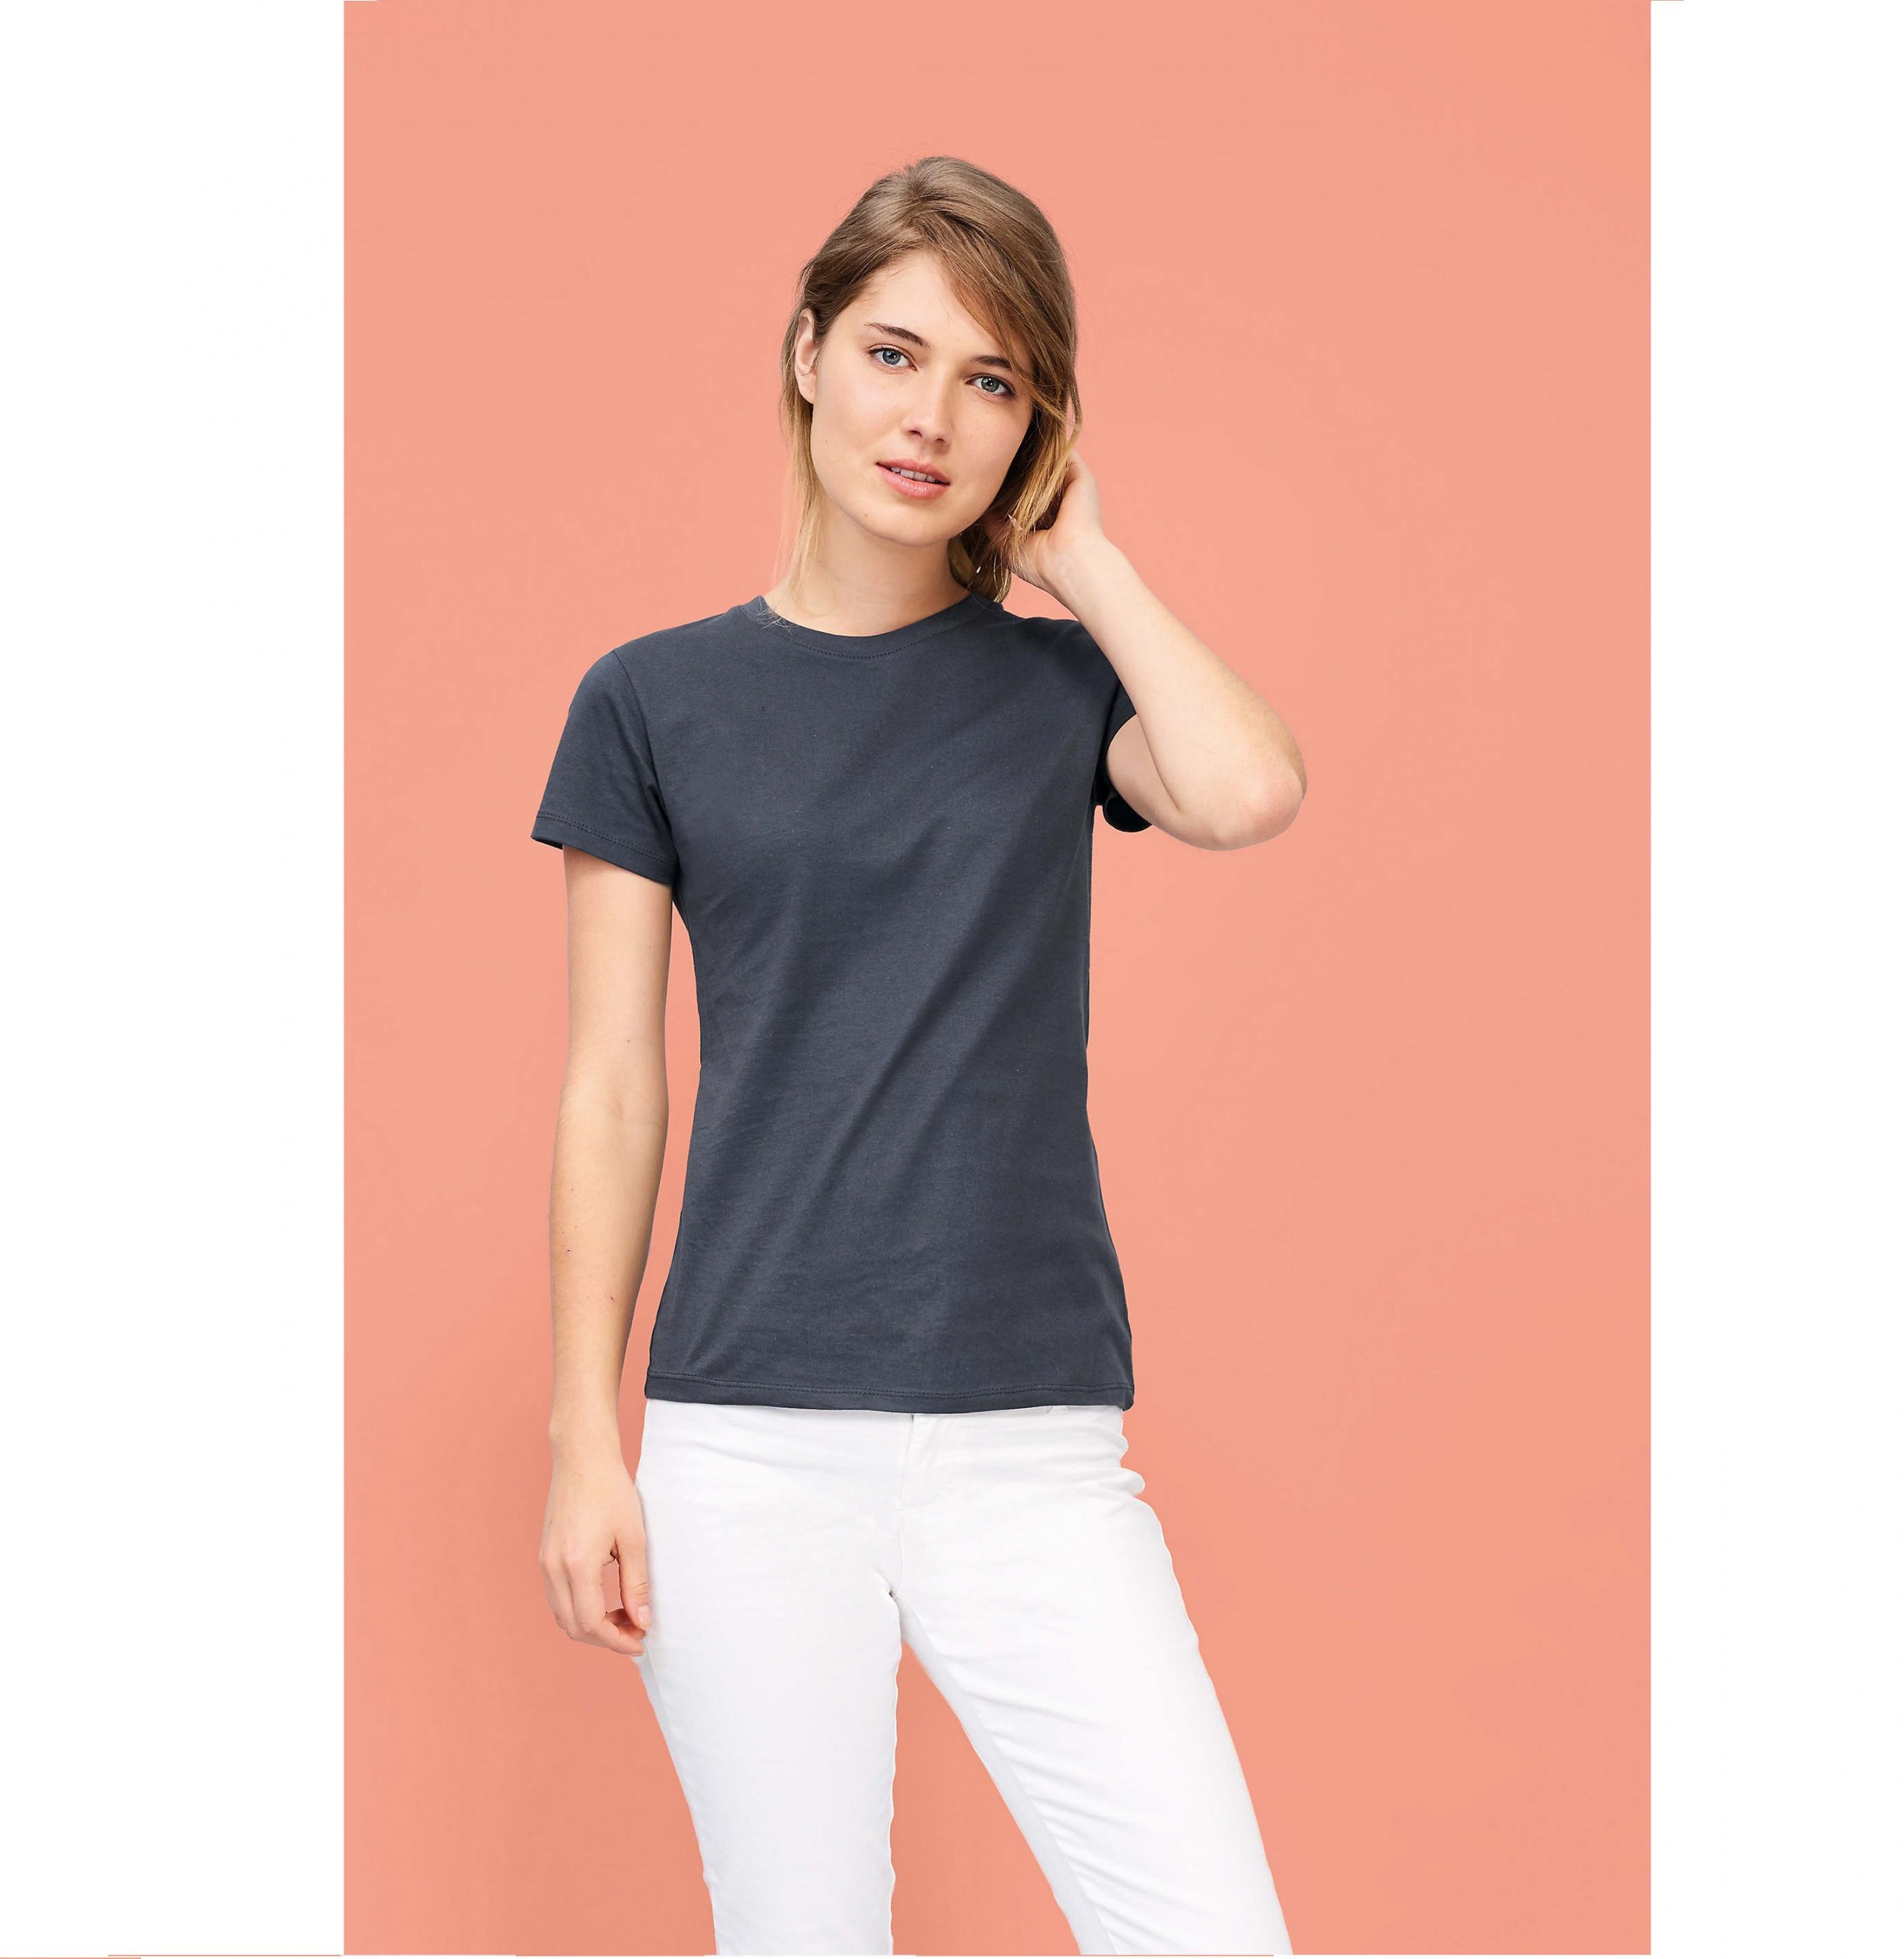 Camiseta de algodón azul celeste (150 gr.)